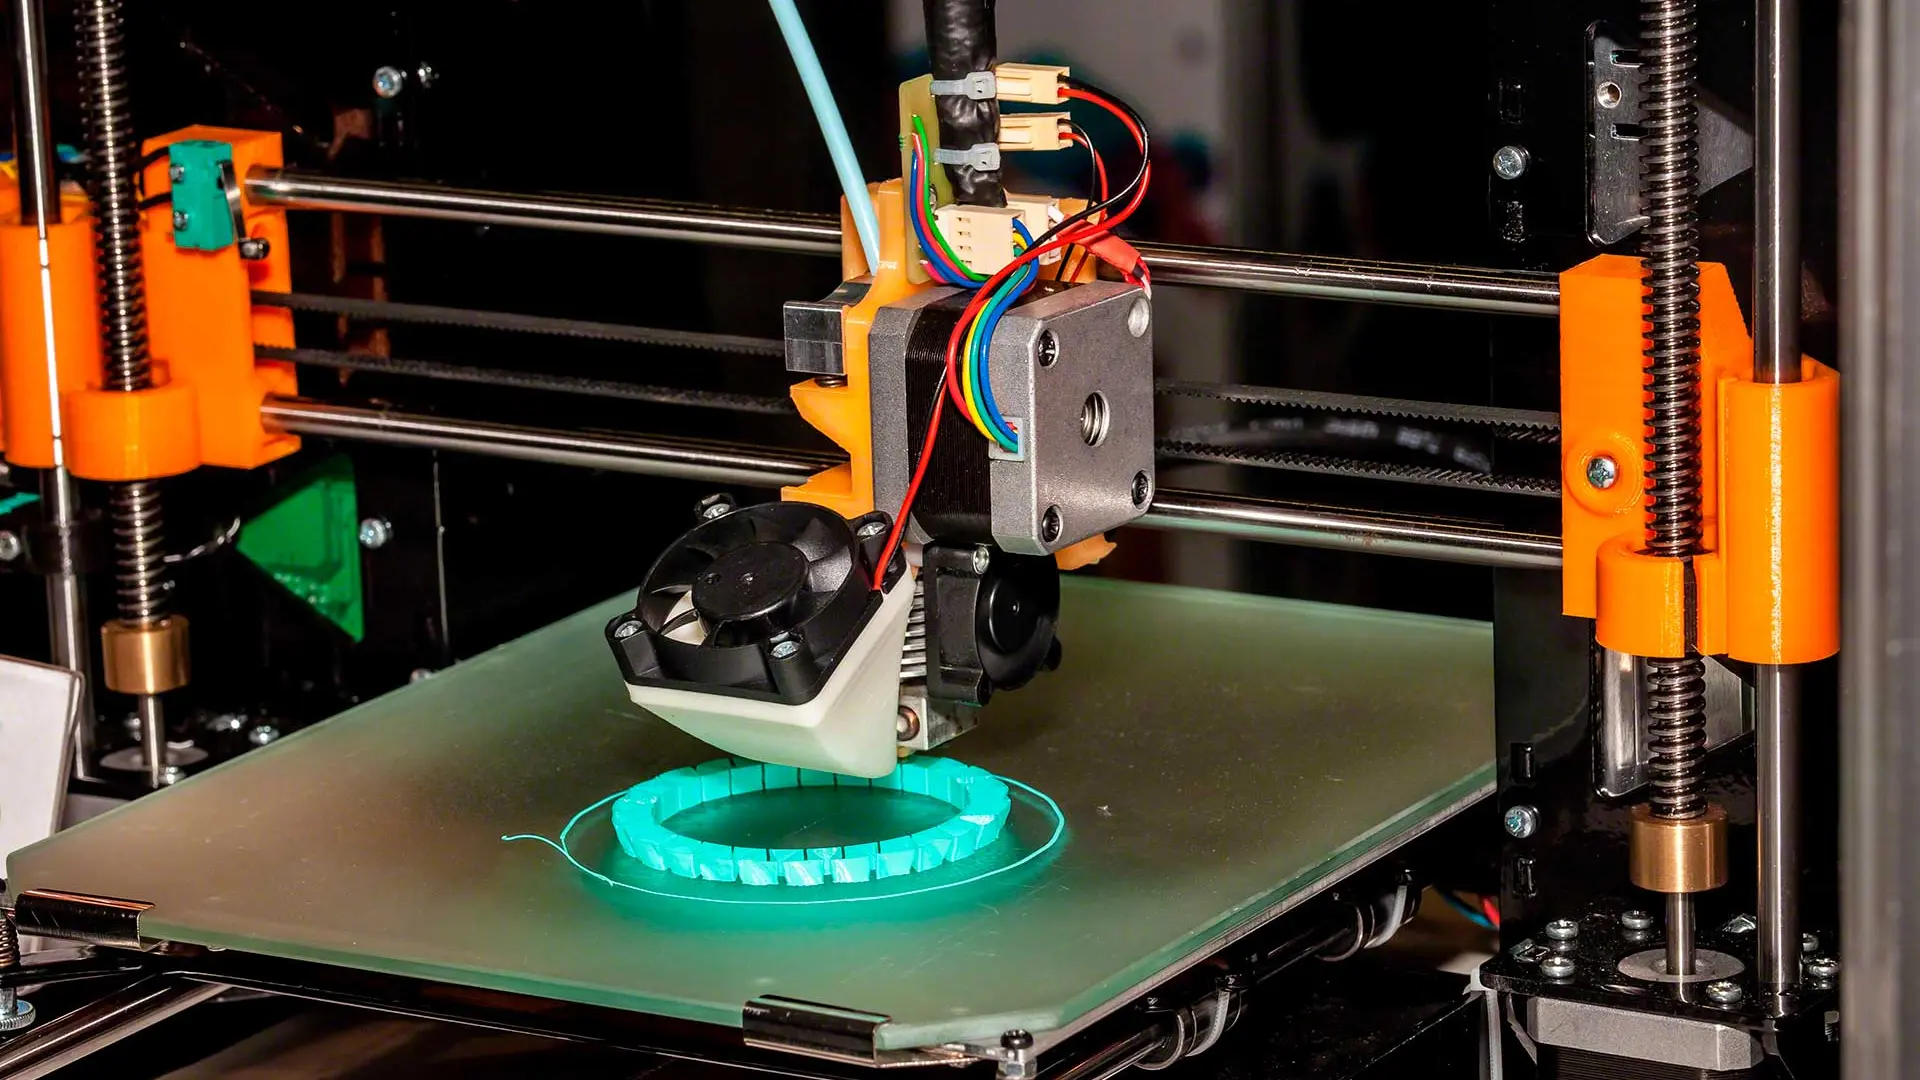 Descarga modelos imprimibles en 3D de las mejores marcas oficiales